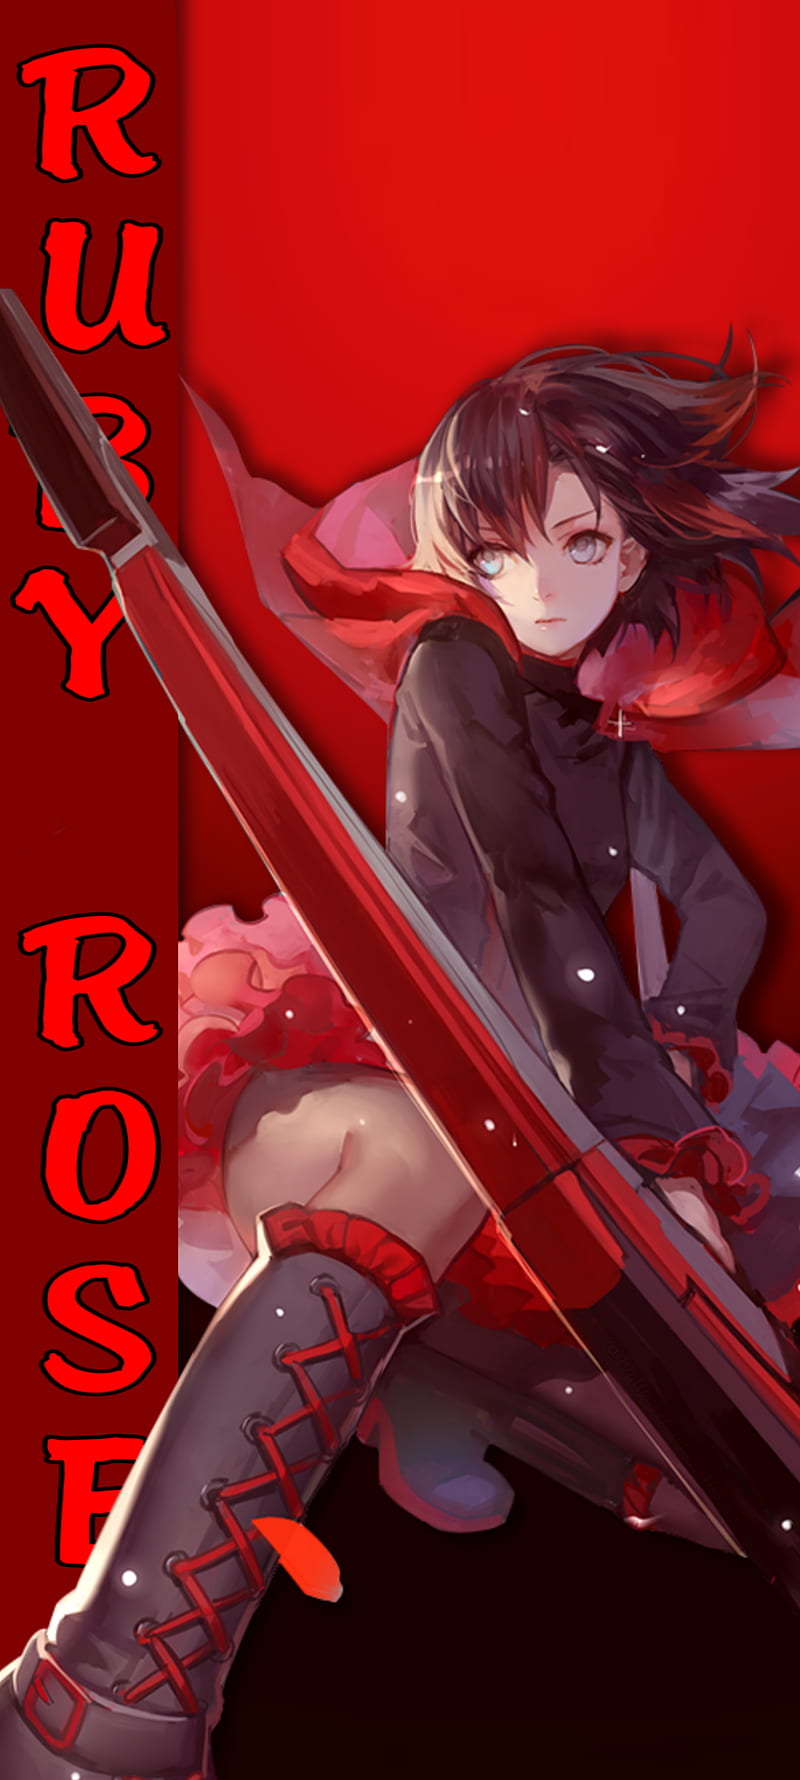 Hình nền : Anime cô gái, nghệ thuật số, fanart, Nhân vật Ruby Rose, Mũi, Ruby  Rose RWBY, Silver Eyes, tóc ngắn, tóc đen, váy 3507x2480 - AksumkA -  1803641 - Hình nền đẹp hd - WallHere